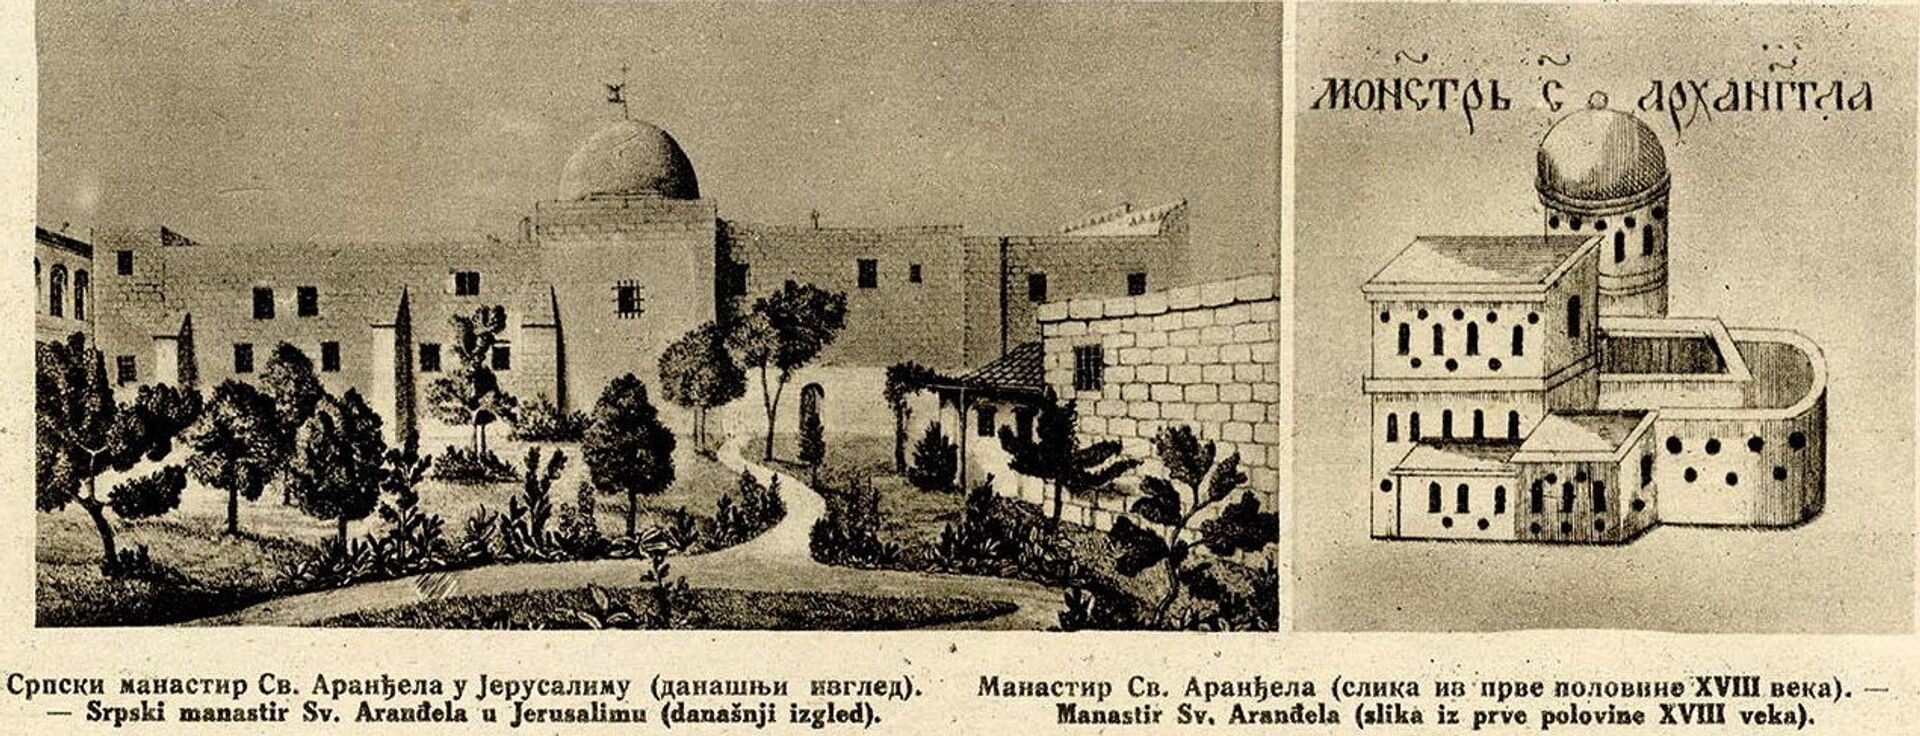 Манастир Светих Арханђела - Sputnik Србија, 1920, 13.07.2021